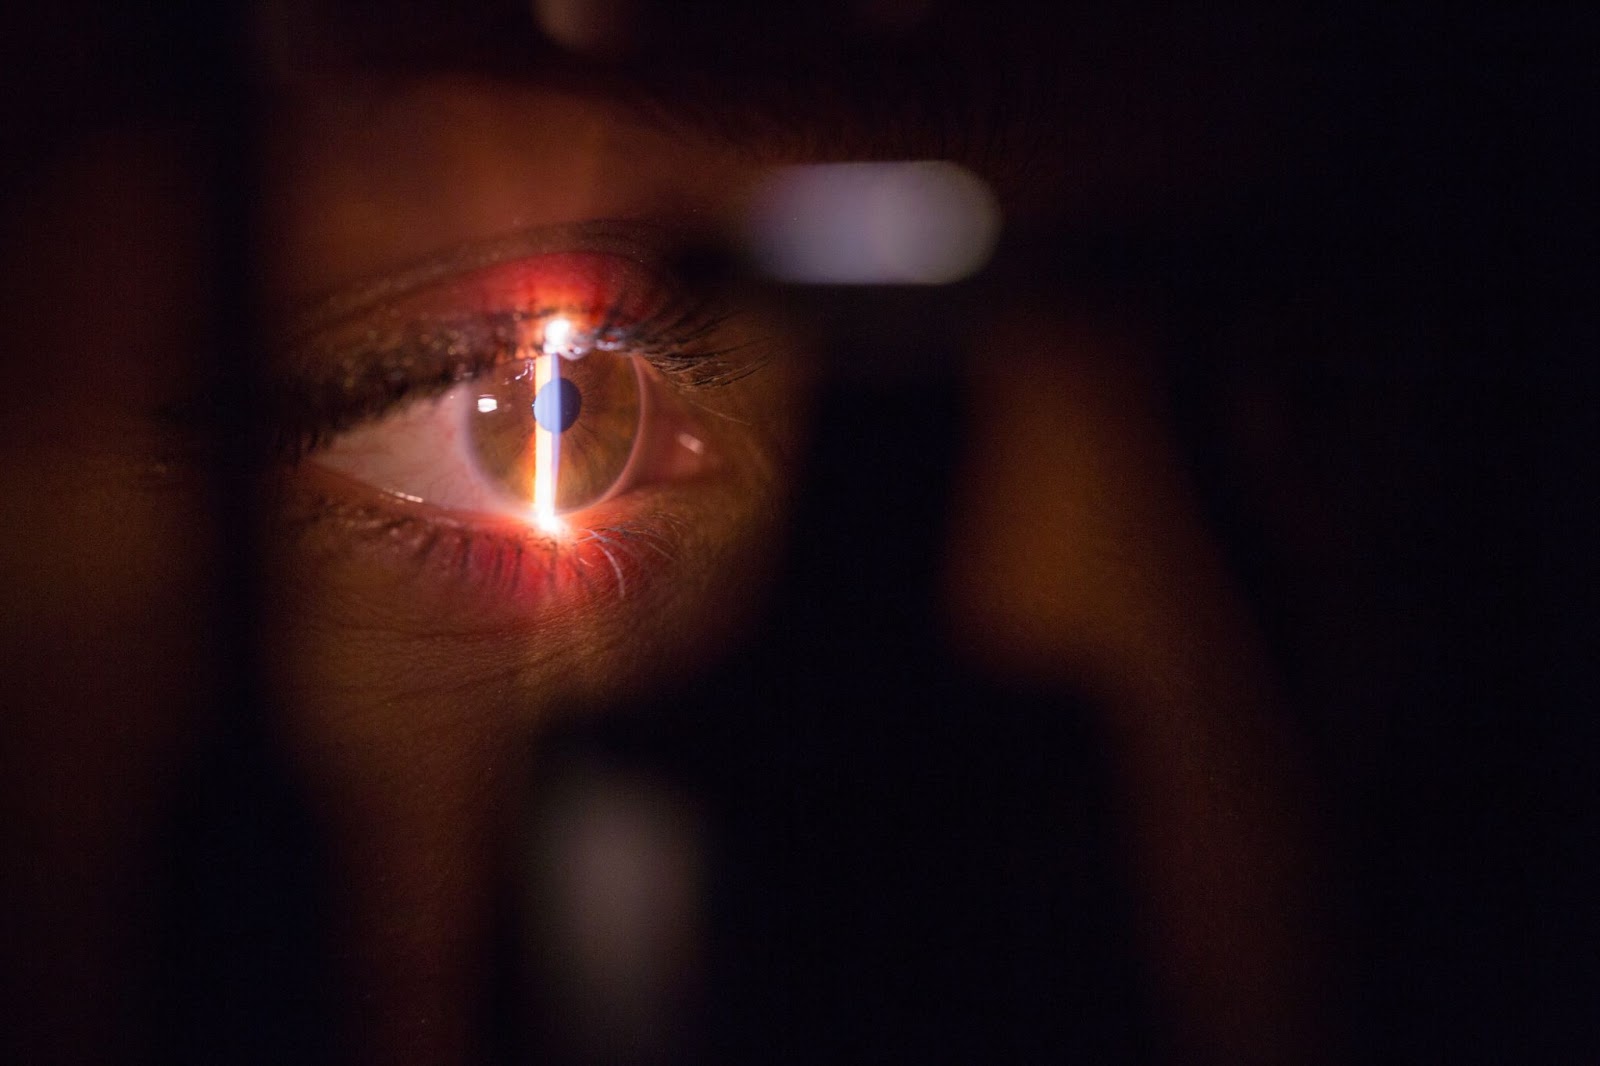 Alterações nos olhos podem apontar para doenças sistêmicas no organismo